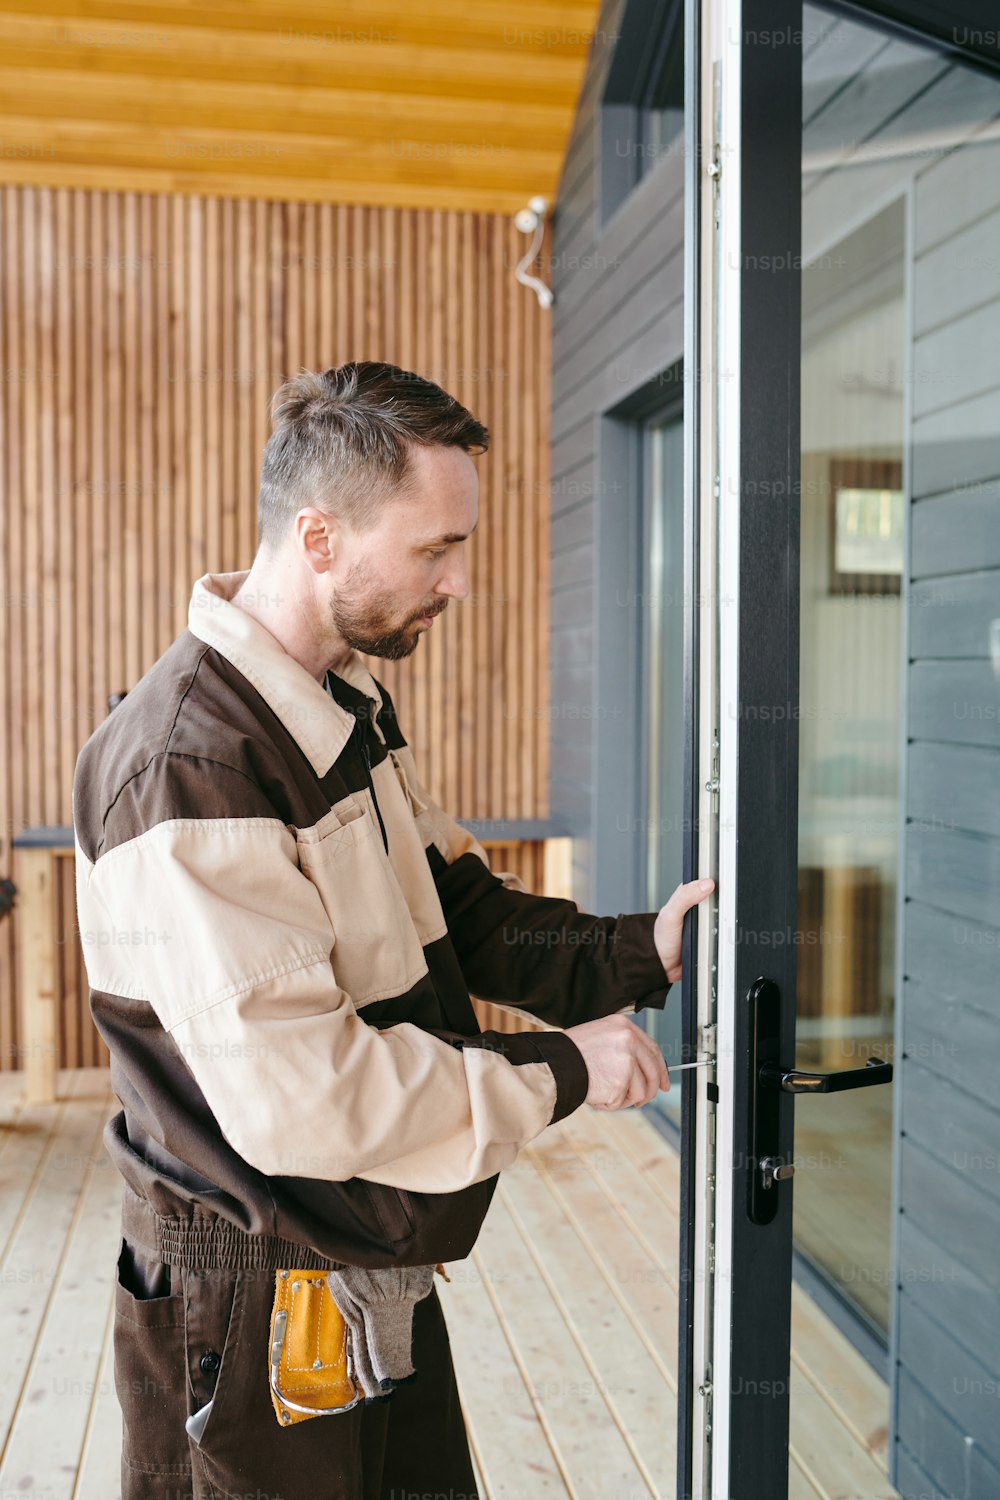 집의 크고 투명한 문에 자물쇠를 고치는 젊은 수리공